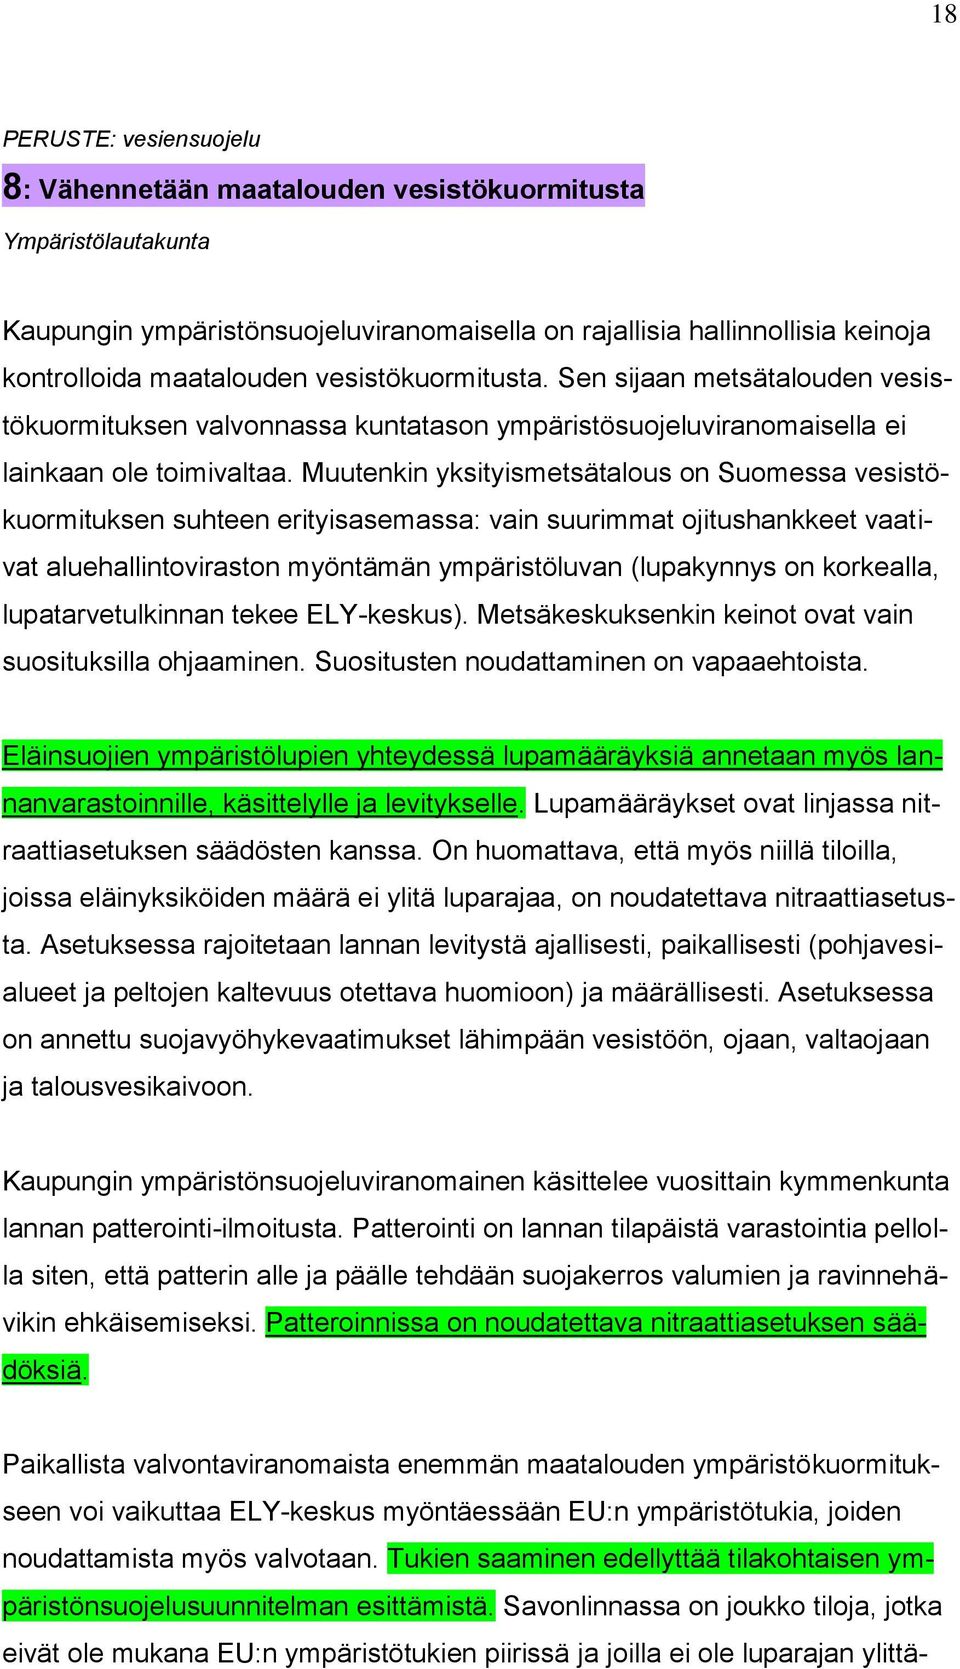 Muutenkin yksityismetsätalous on Suomessa vesistökuormituksen suhteen erityisasemassa: vain suurimmat ojitushankkeet vaativat aluehallintoviraston myöntämän ympäristöluvan (lupakynnys on korkealla,